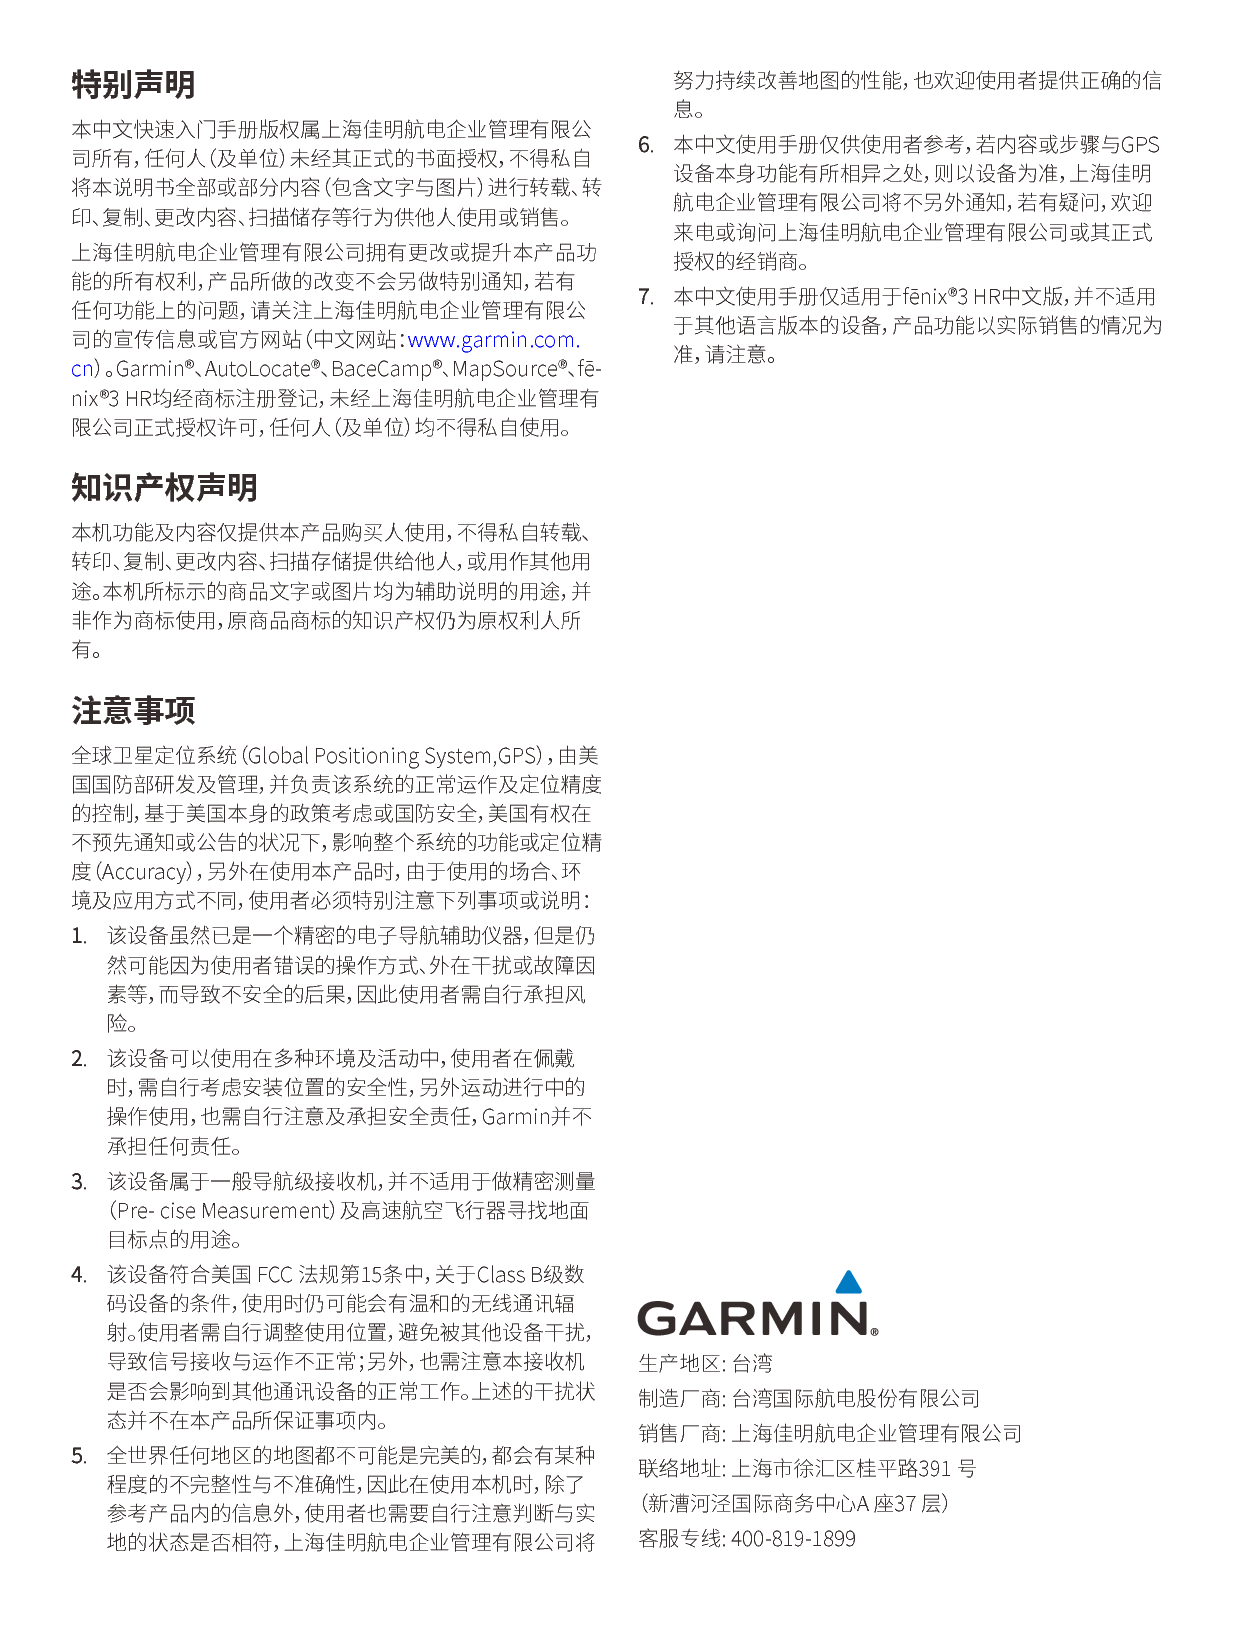 佳明 Garmin FENIX3 HR 使用说明书 第1页